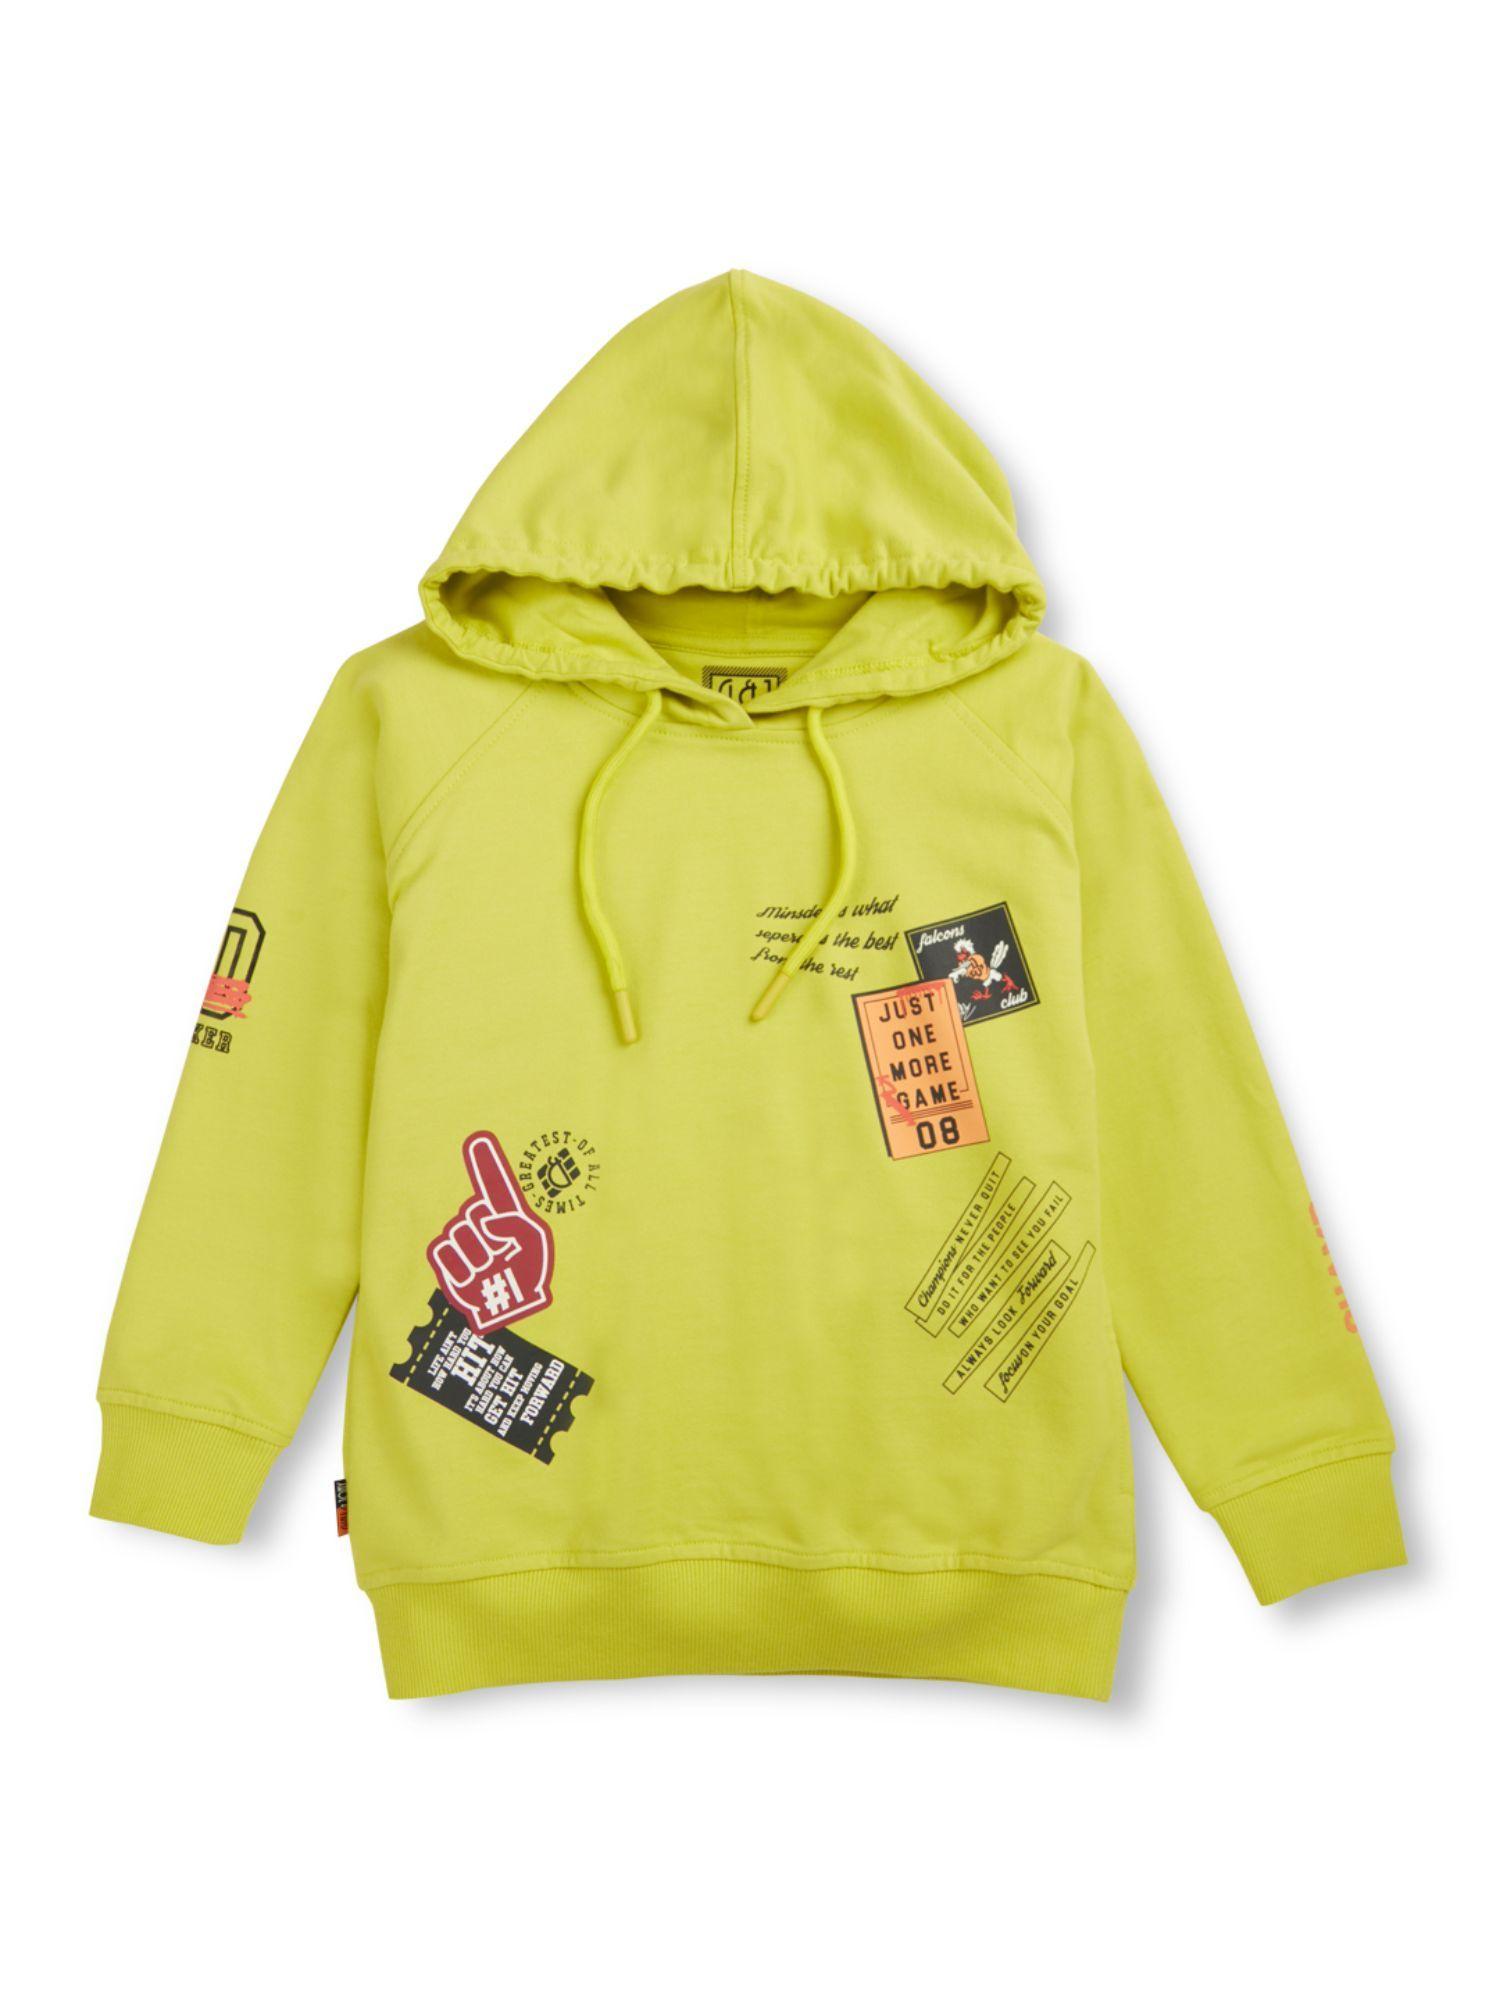 boys yellow fleece full sleeves printed hoodie